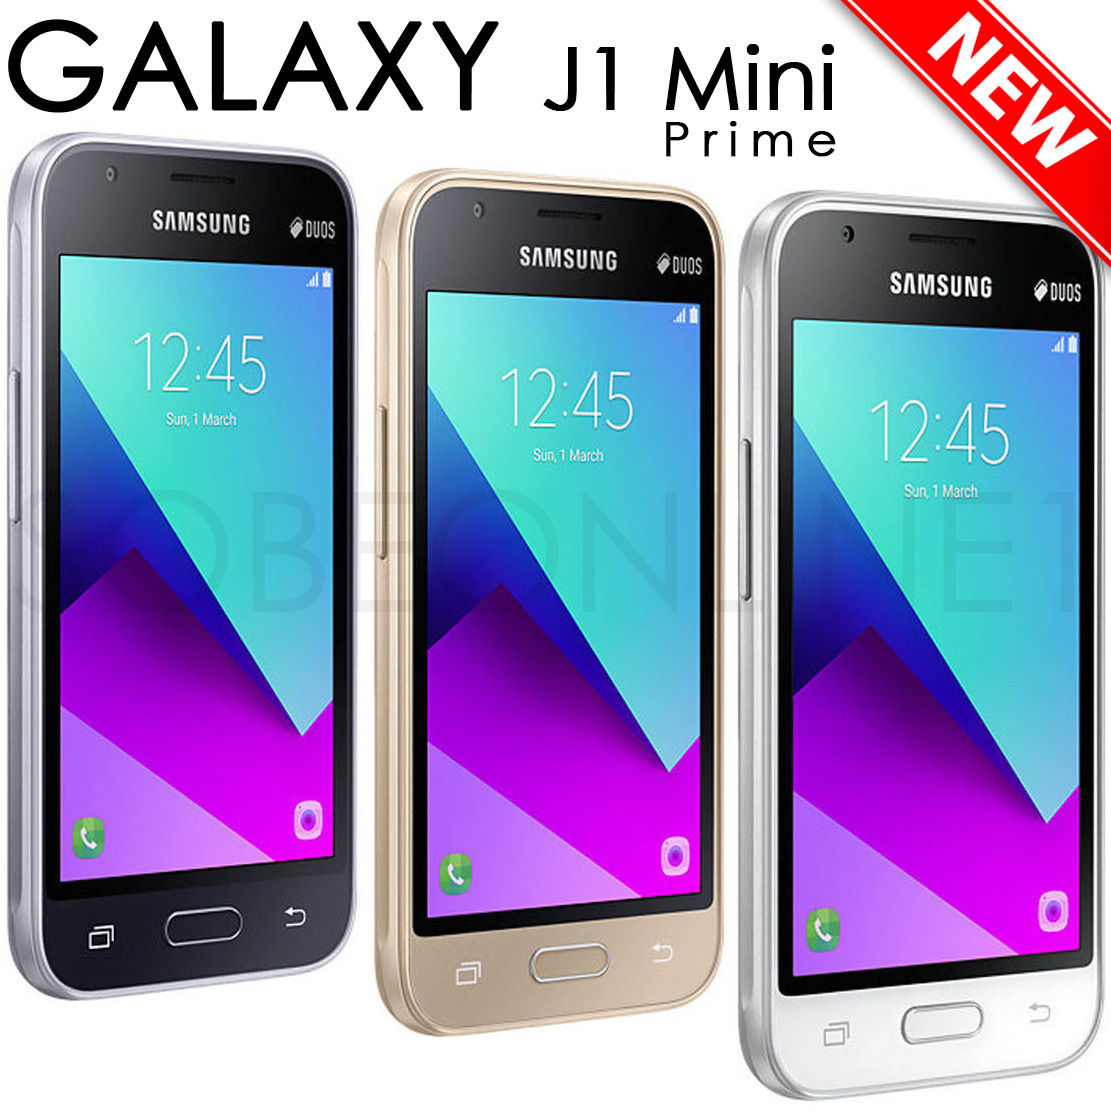 Samsung galaxy mini prime. Samsung Galaxy j1 Mini. Samsung j1 Mini Prime. Samsung Galaxy j1 Mini Prime. Samsung Galaxy j1 Prime.